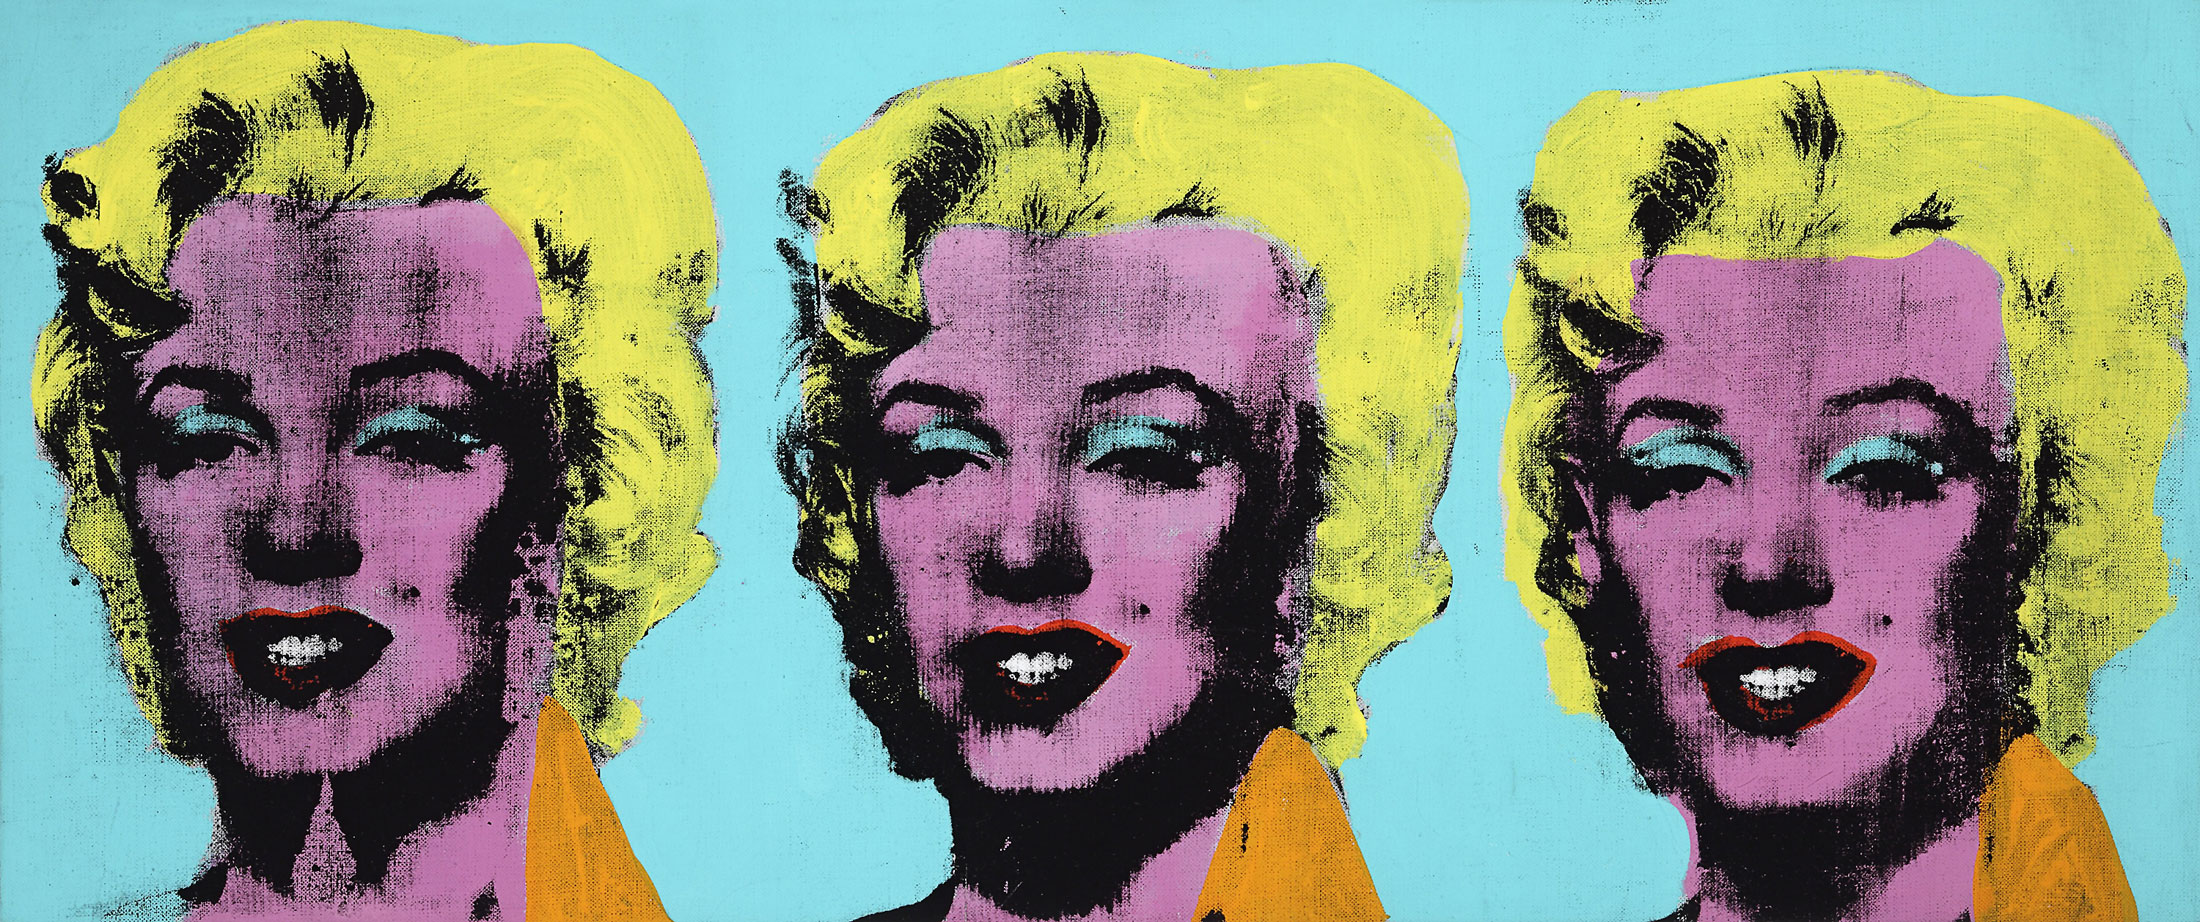 Andy Warhol (American, 1928-1987) 'Three Marilyns' 1962